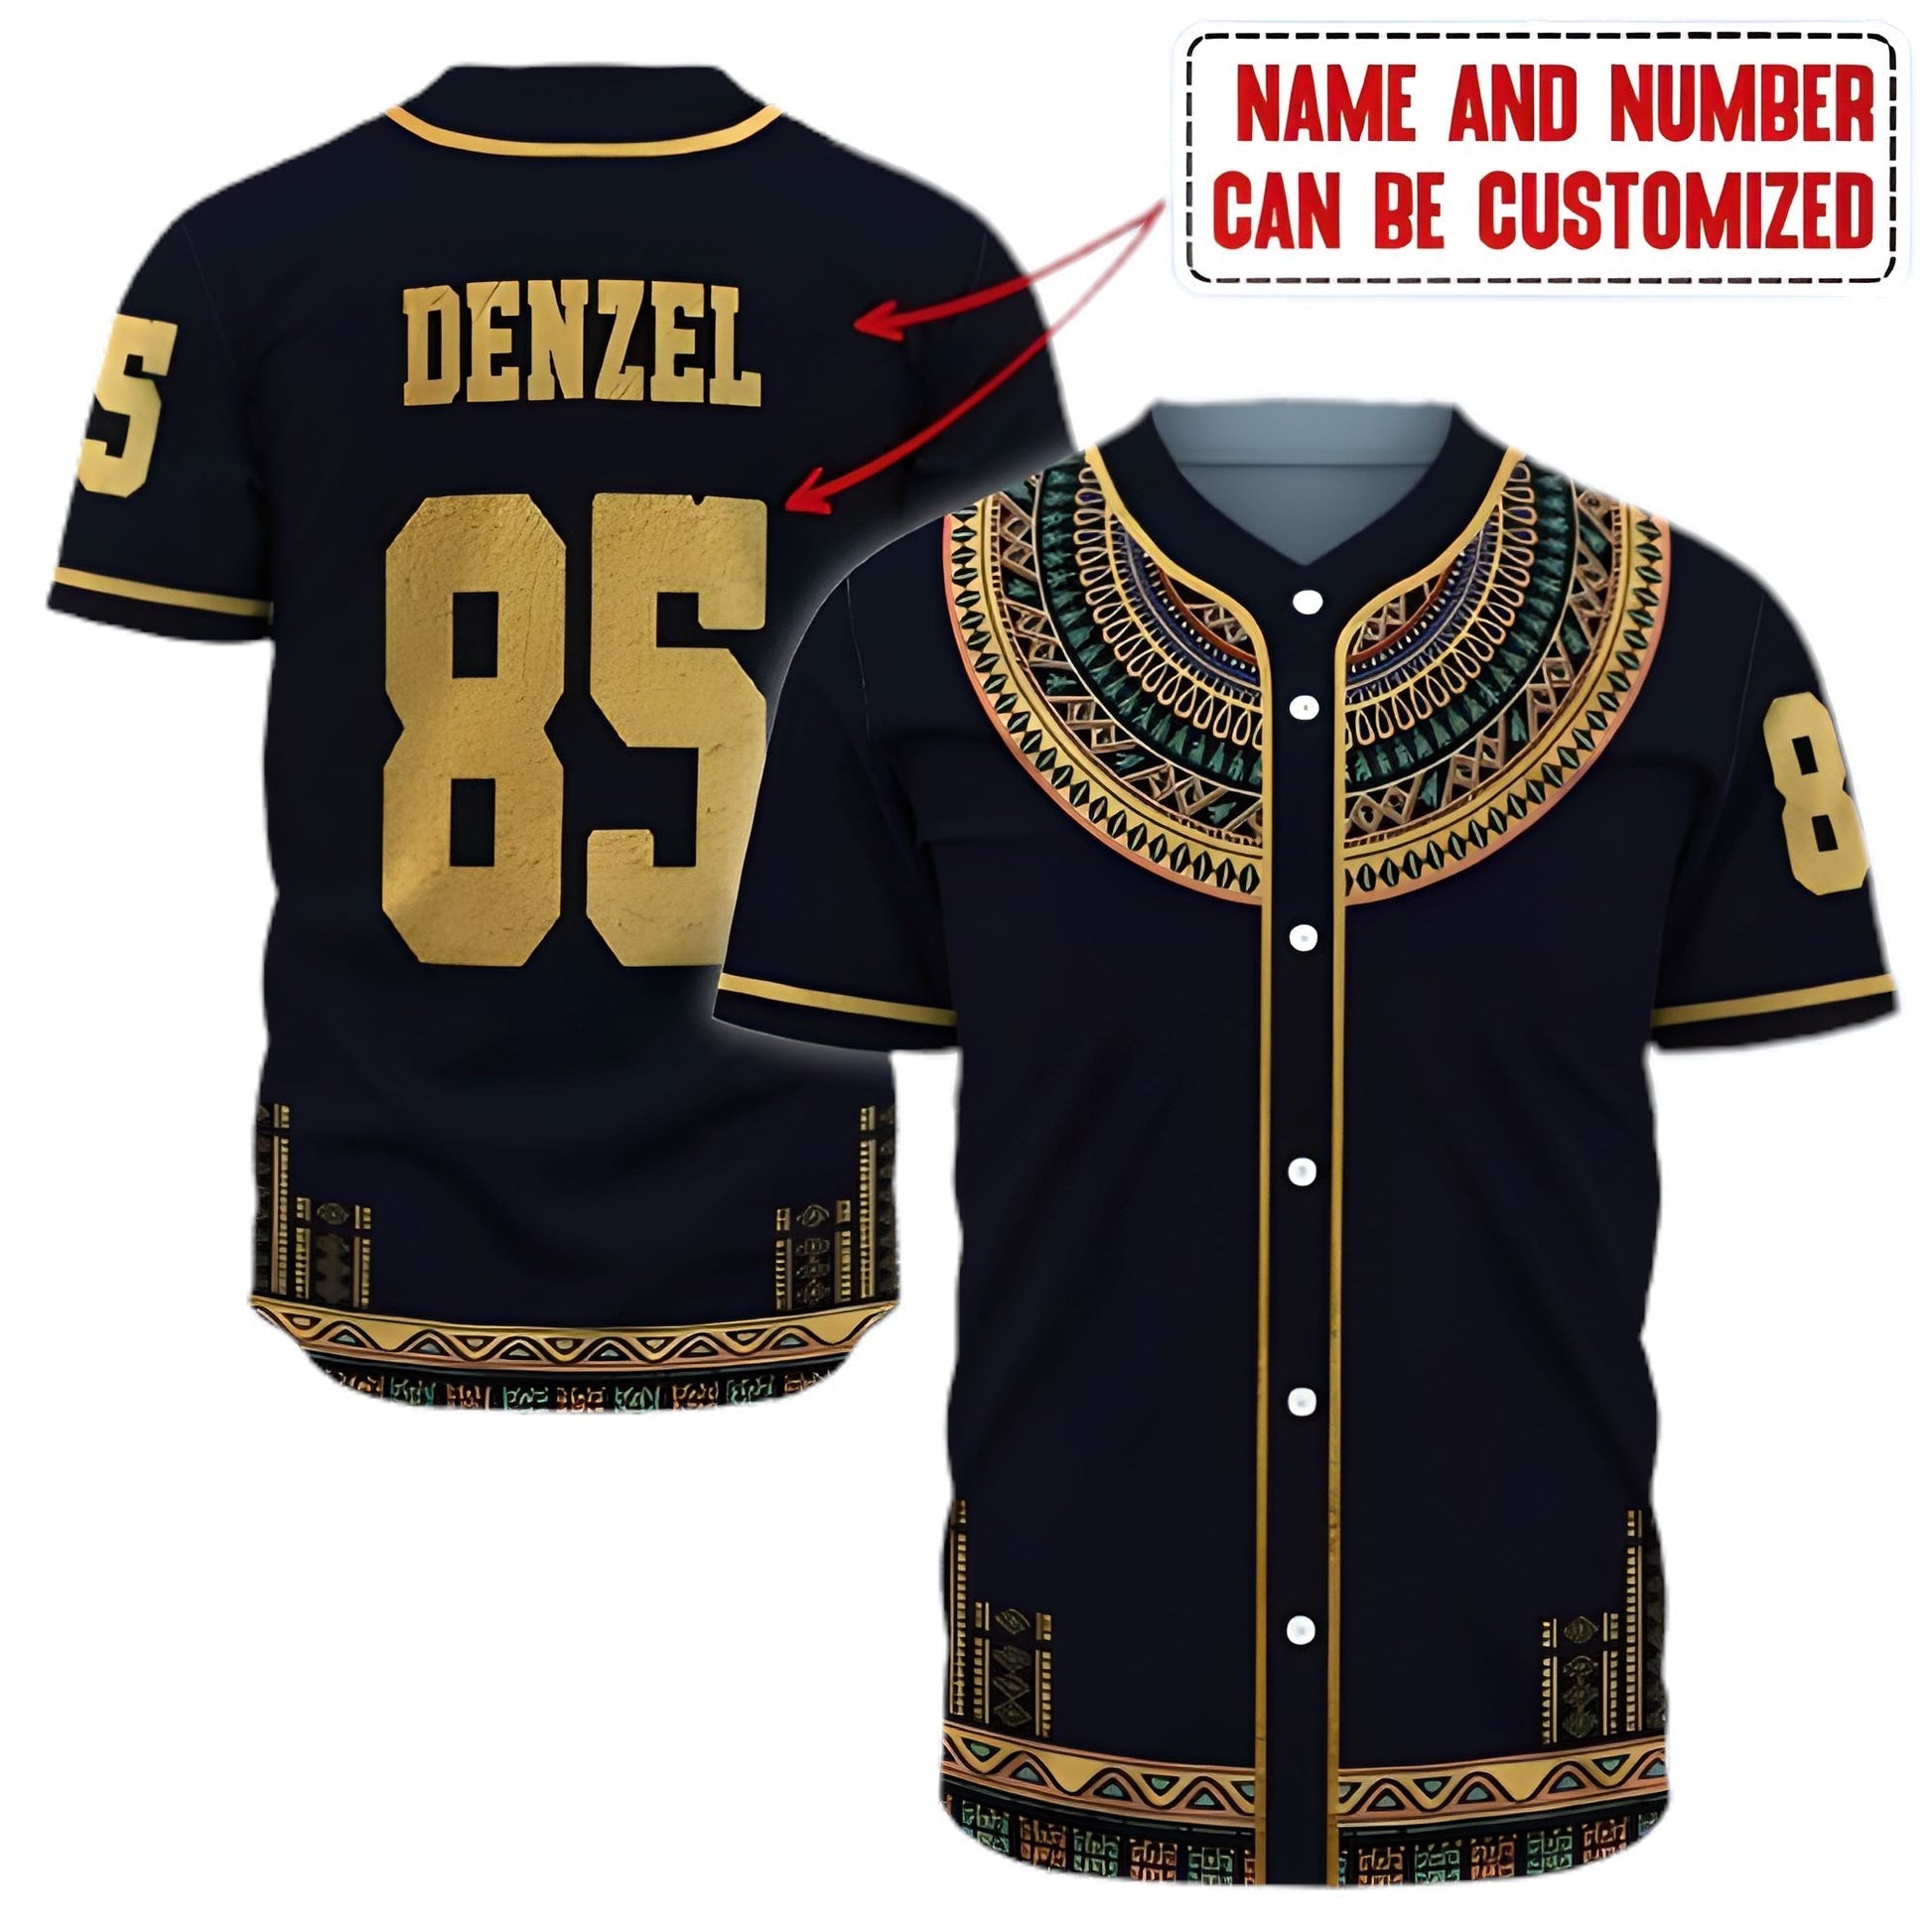 Dashiki Add Juneteenth - Personalized Baseball Tee Jersey